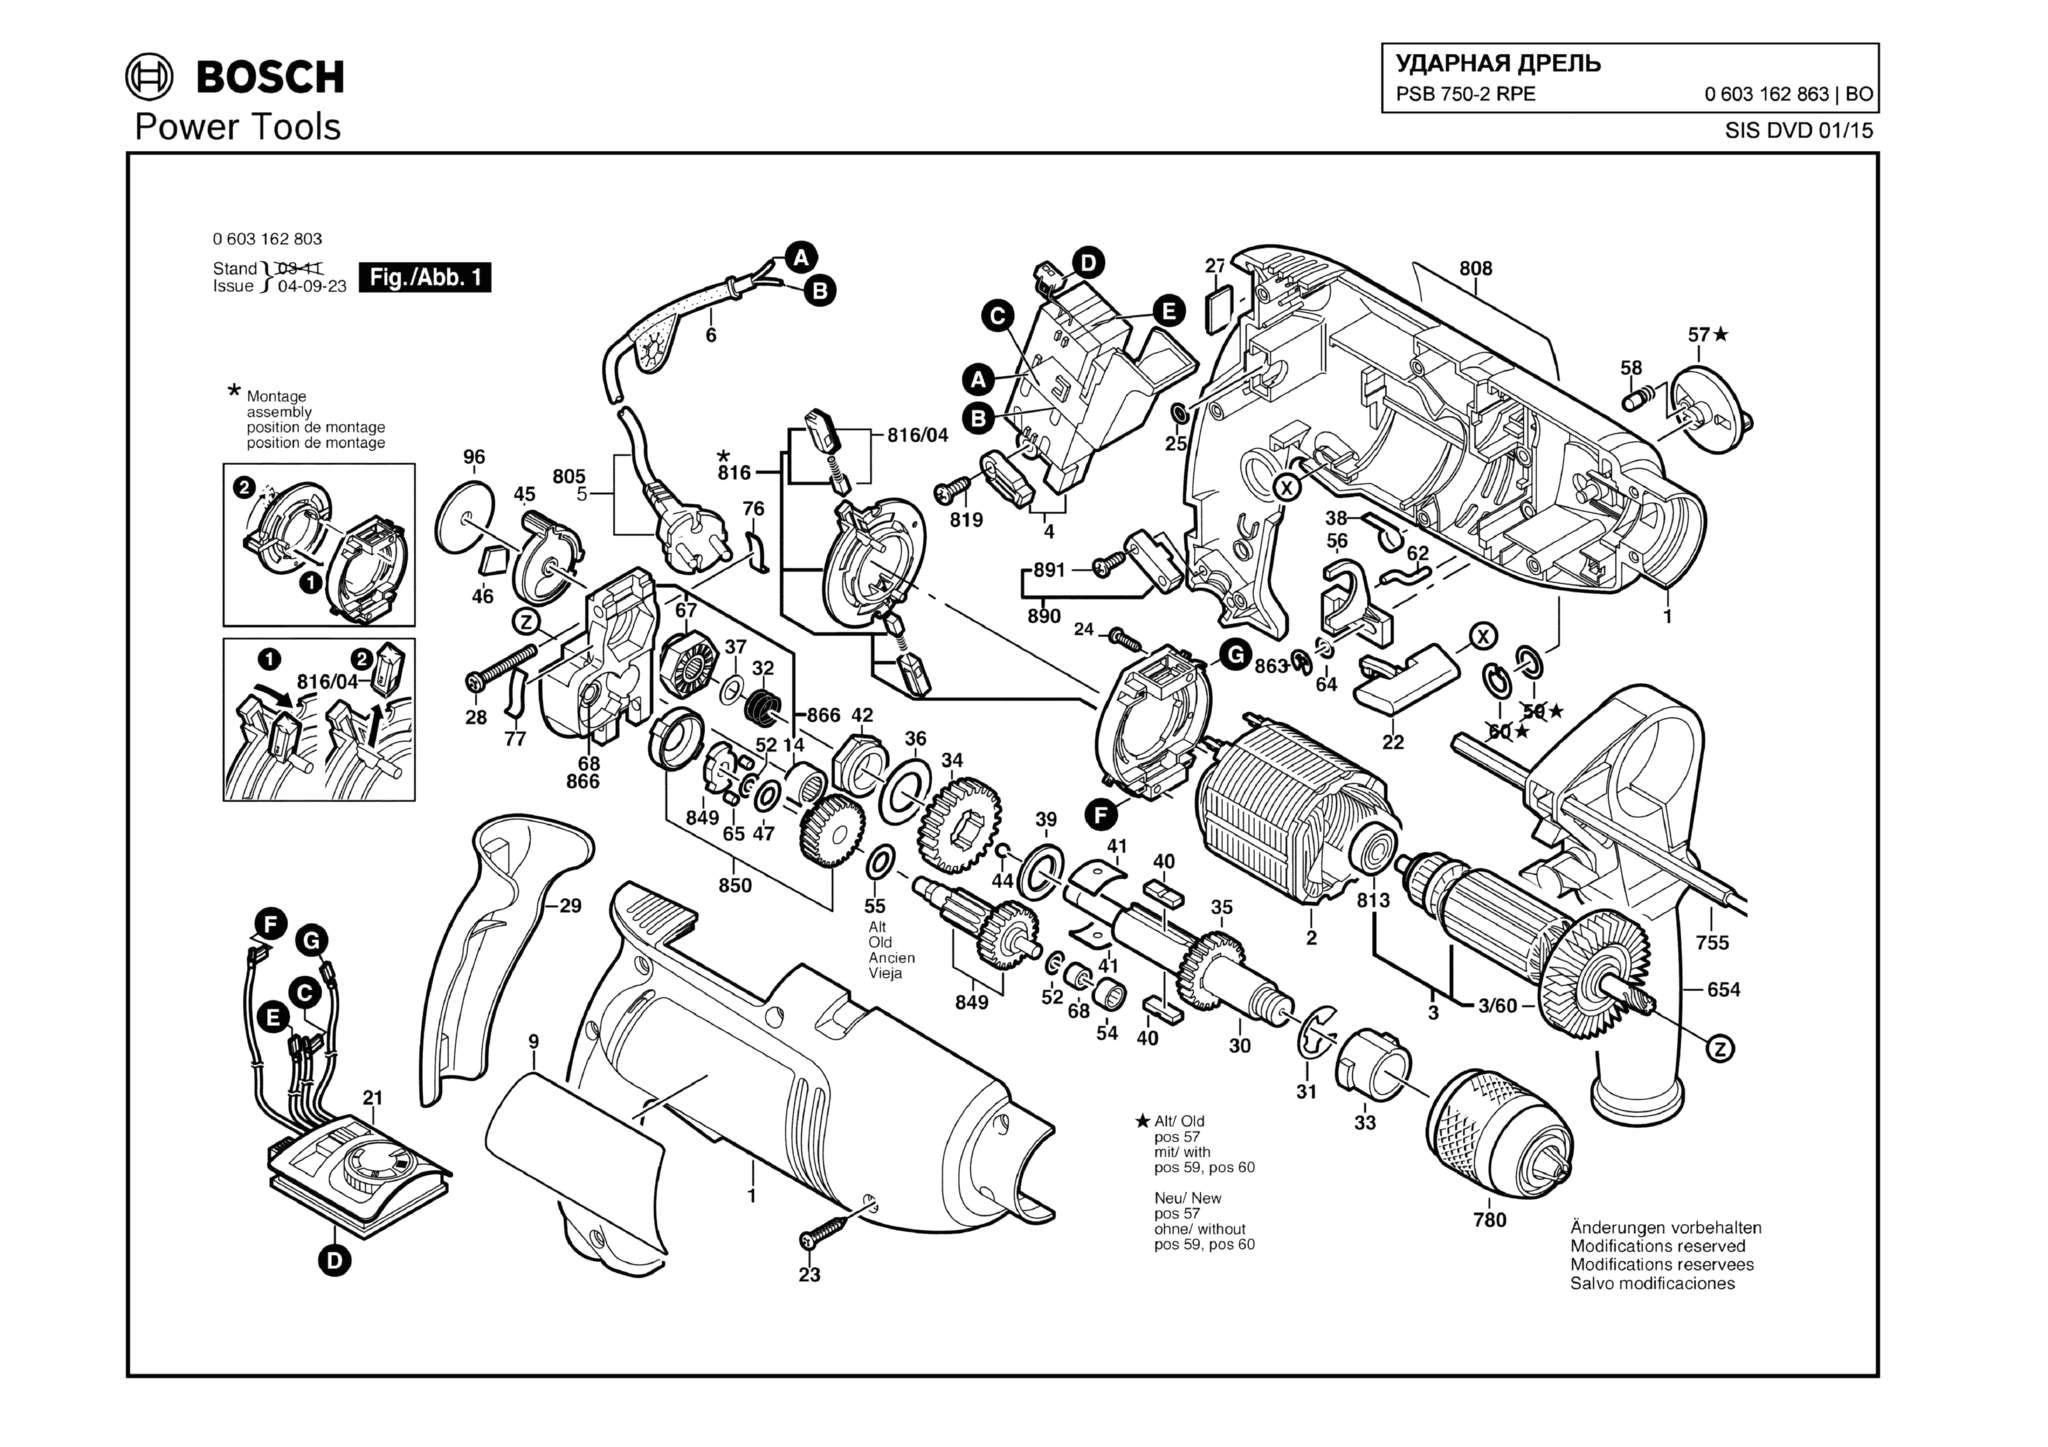 Запчасти, схема и деталировка Bosch PSB 750-2 RPE (ТИП 0603162863)